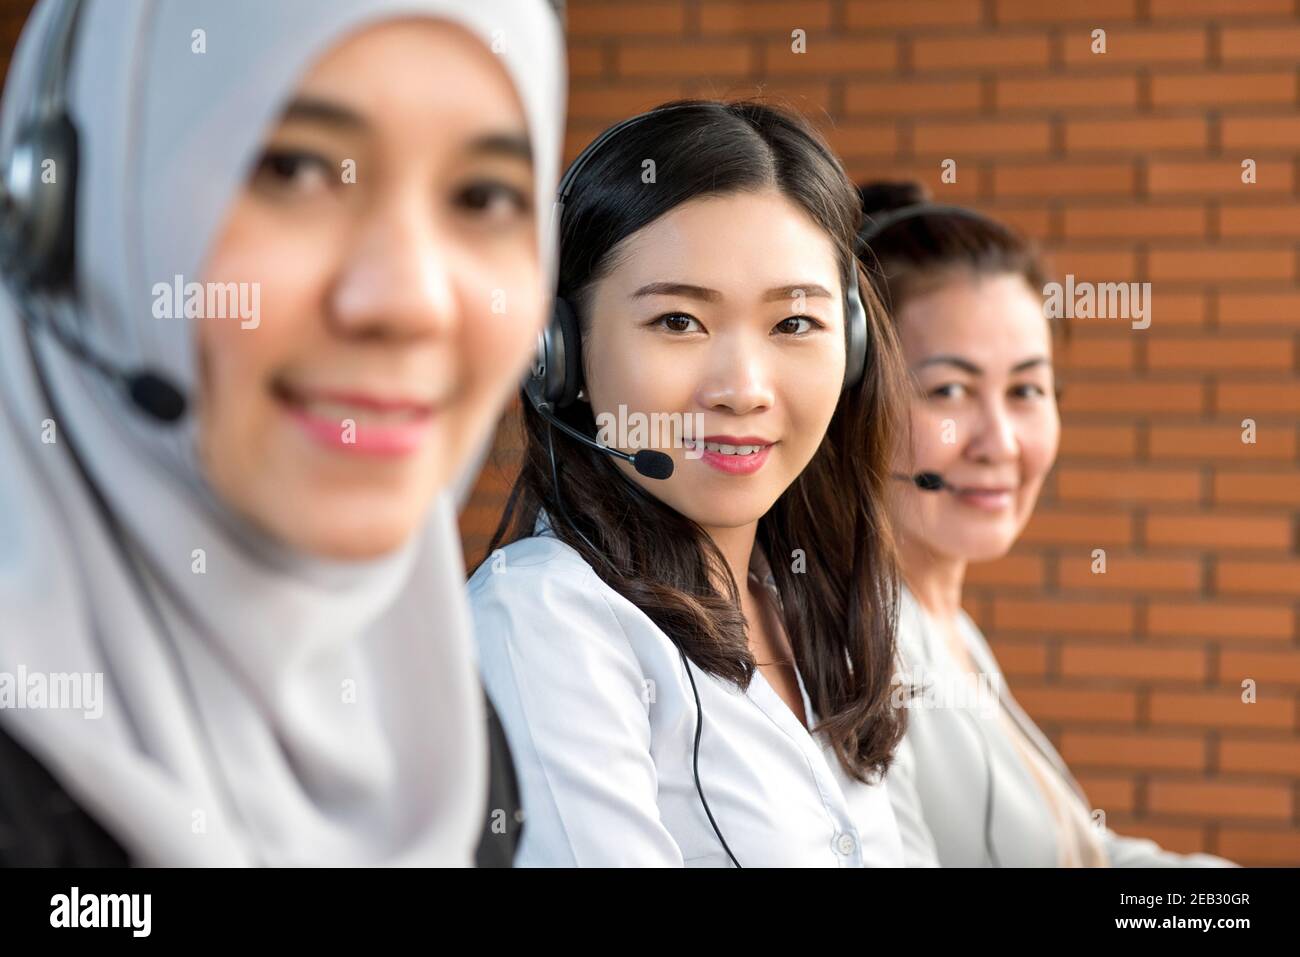 Internationale, vielfältige Frauen, die als Kunden im Callcenter arbeiten Servicebetreiber Stockfoto